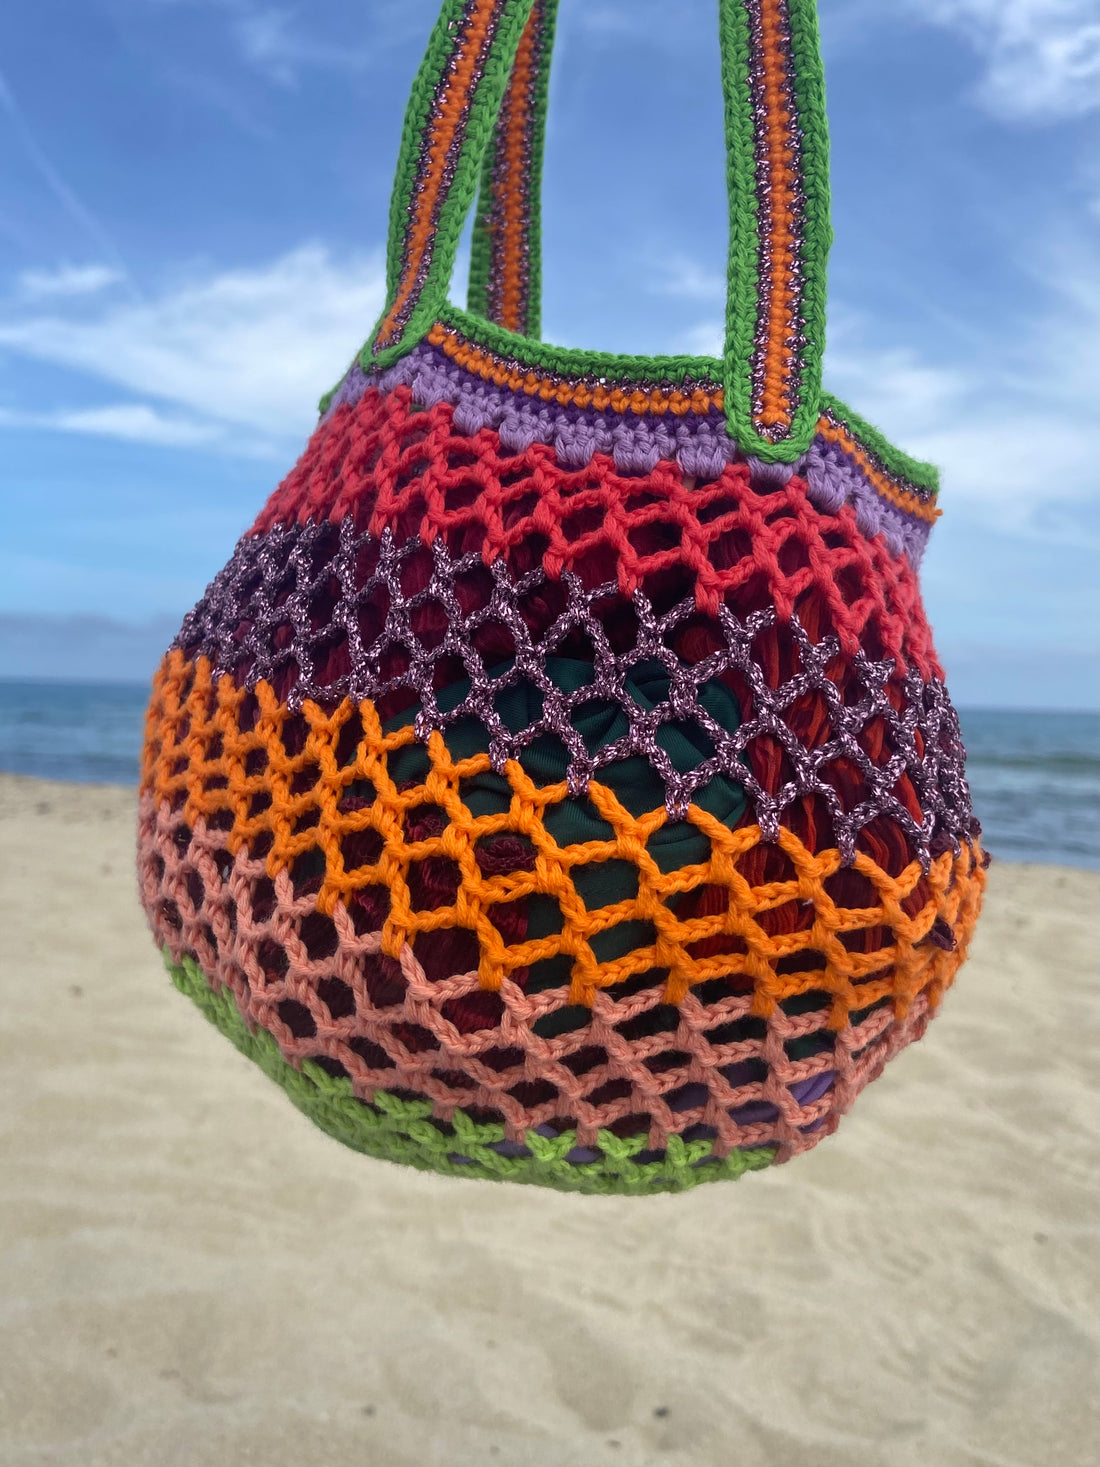 Anabaum sac crochet fait main moyen modele couleur funky vu sur la plage